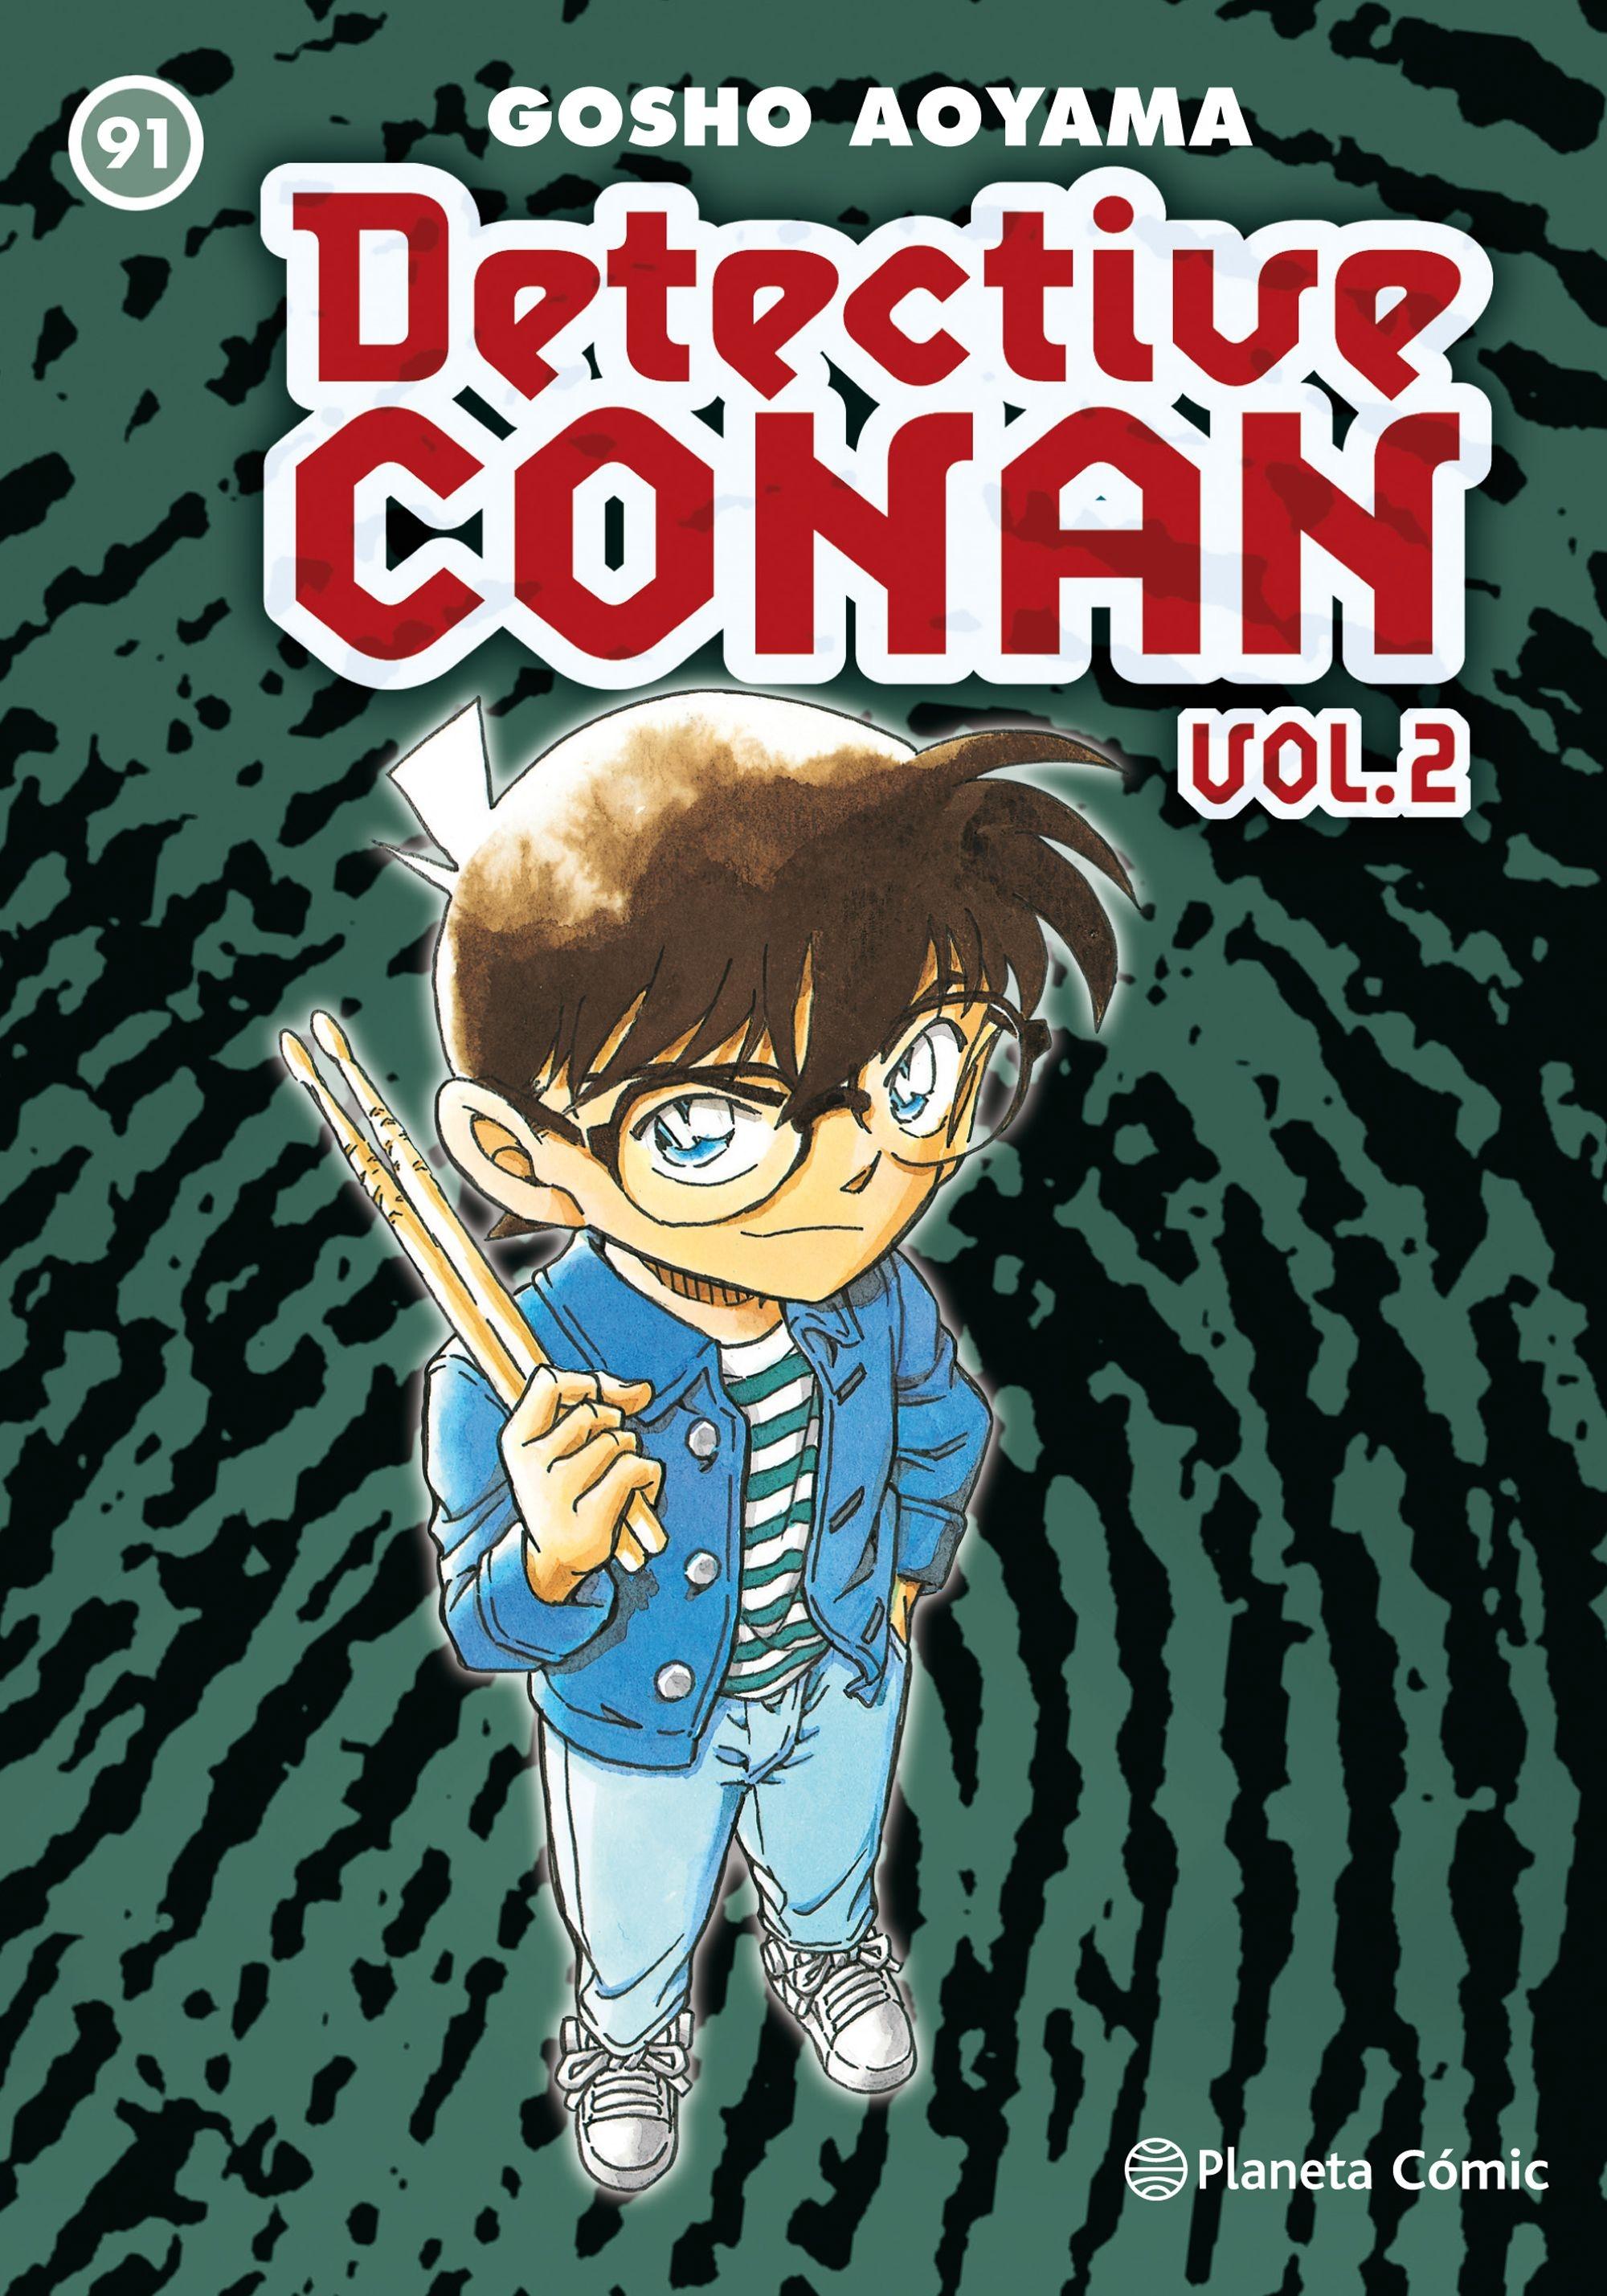 Detective Conan Vol.2 | Nº 91. 